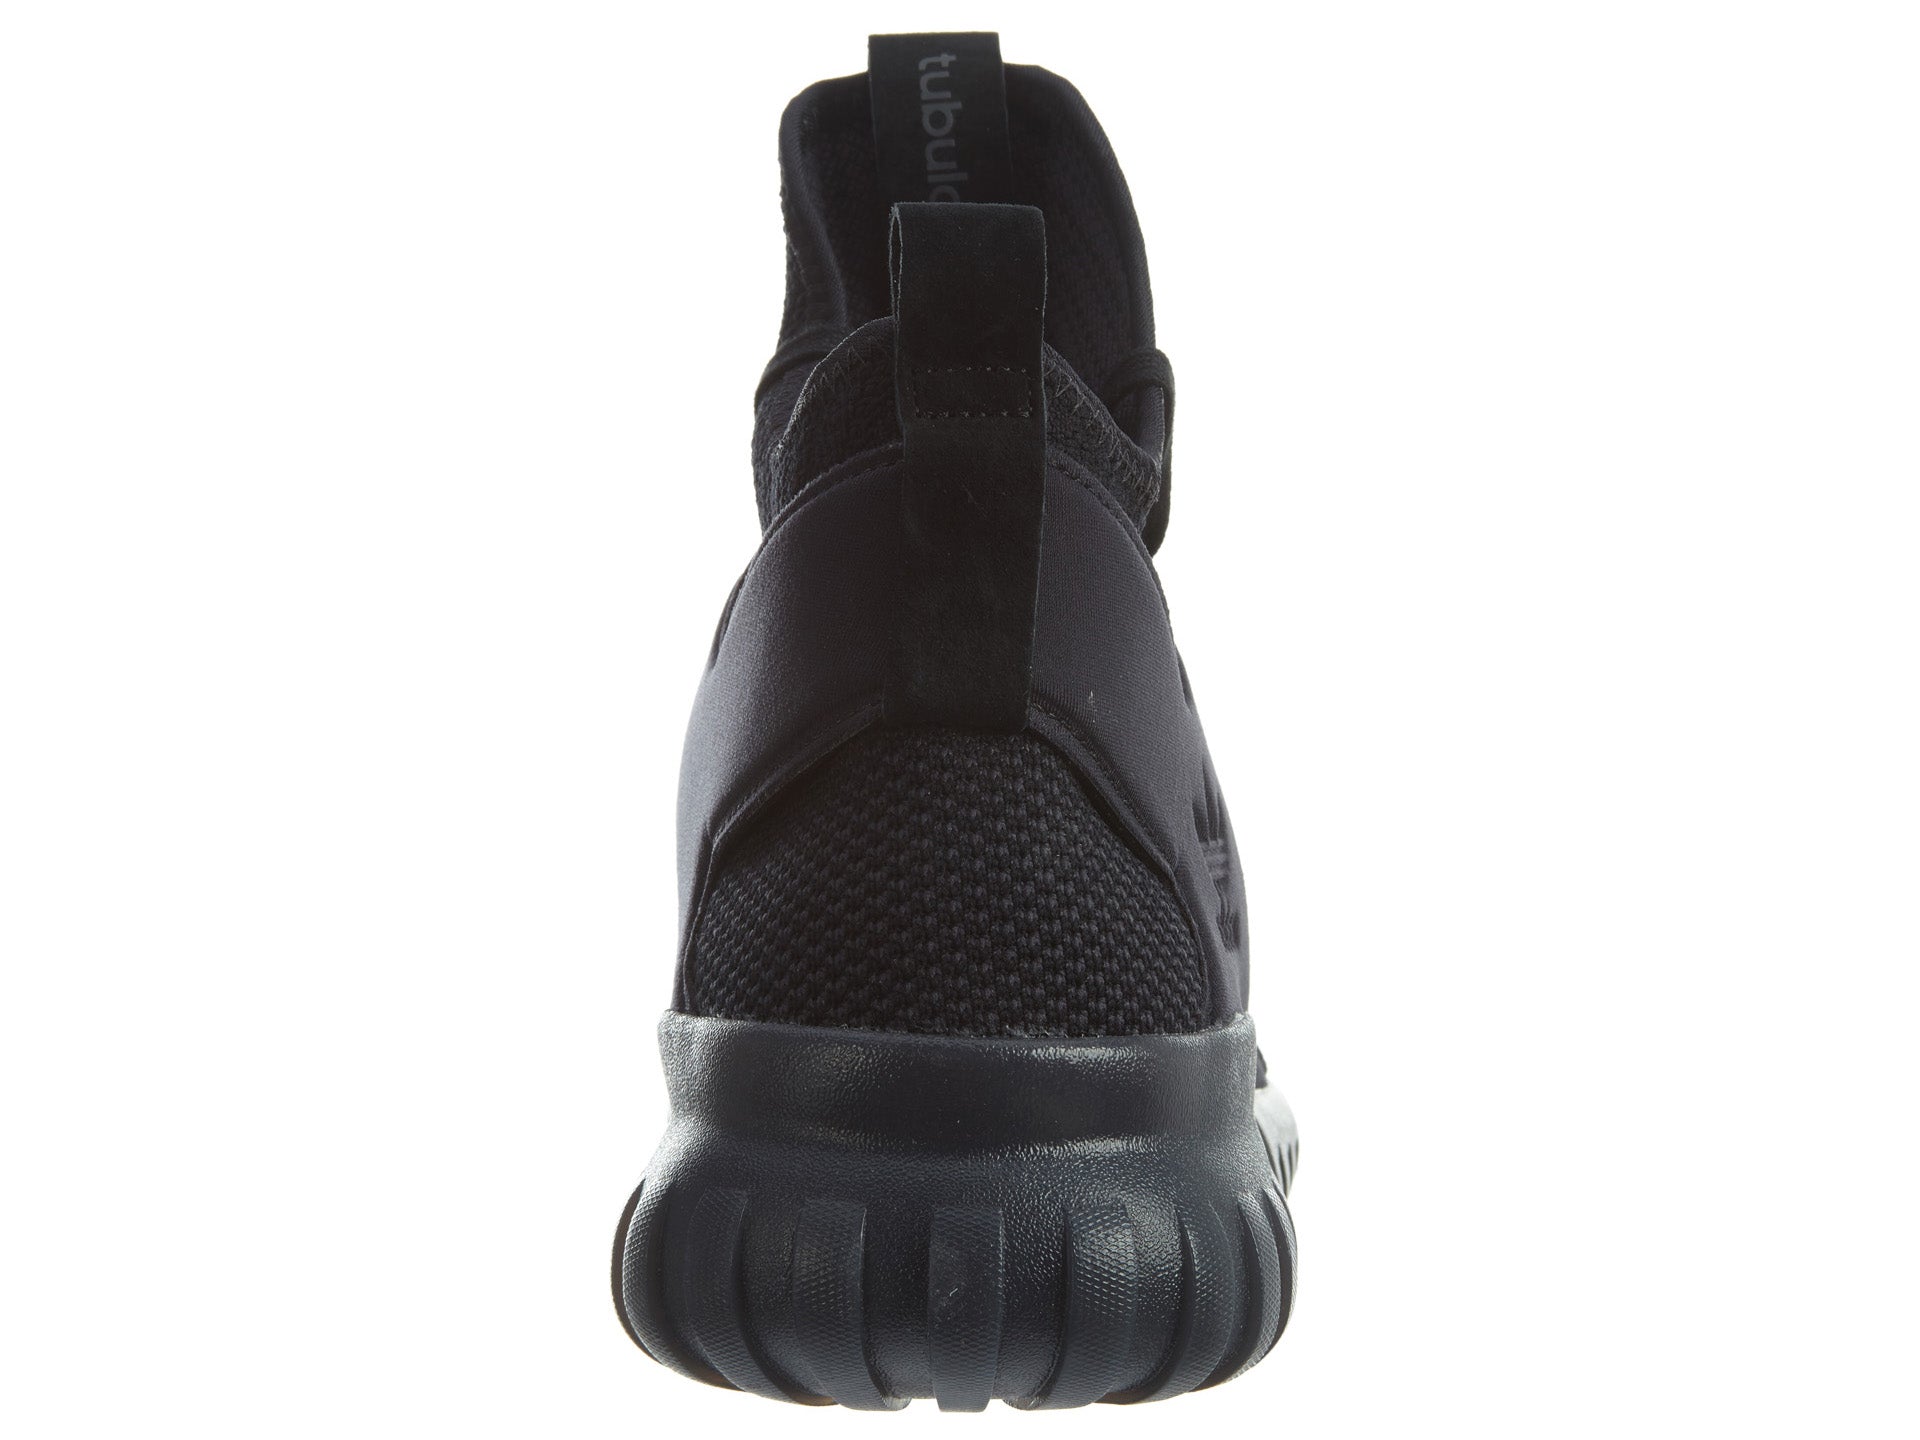 Adidas Tubular X Pk Black/Dark Grey/Black Mens Style :S80132